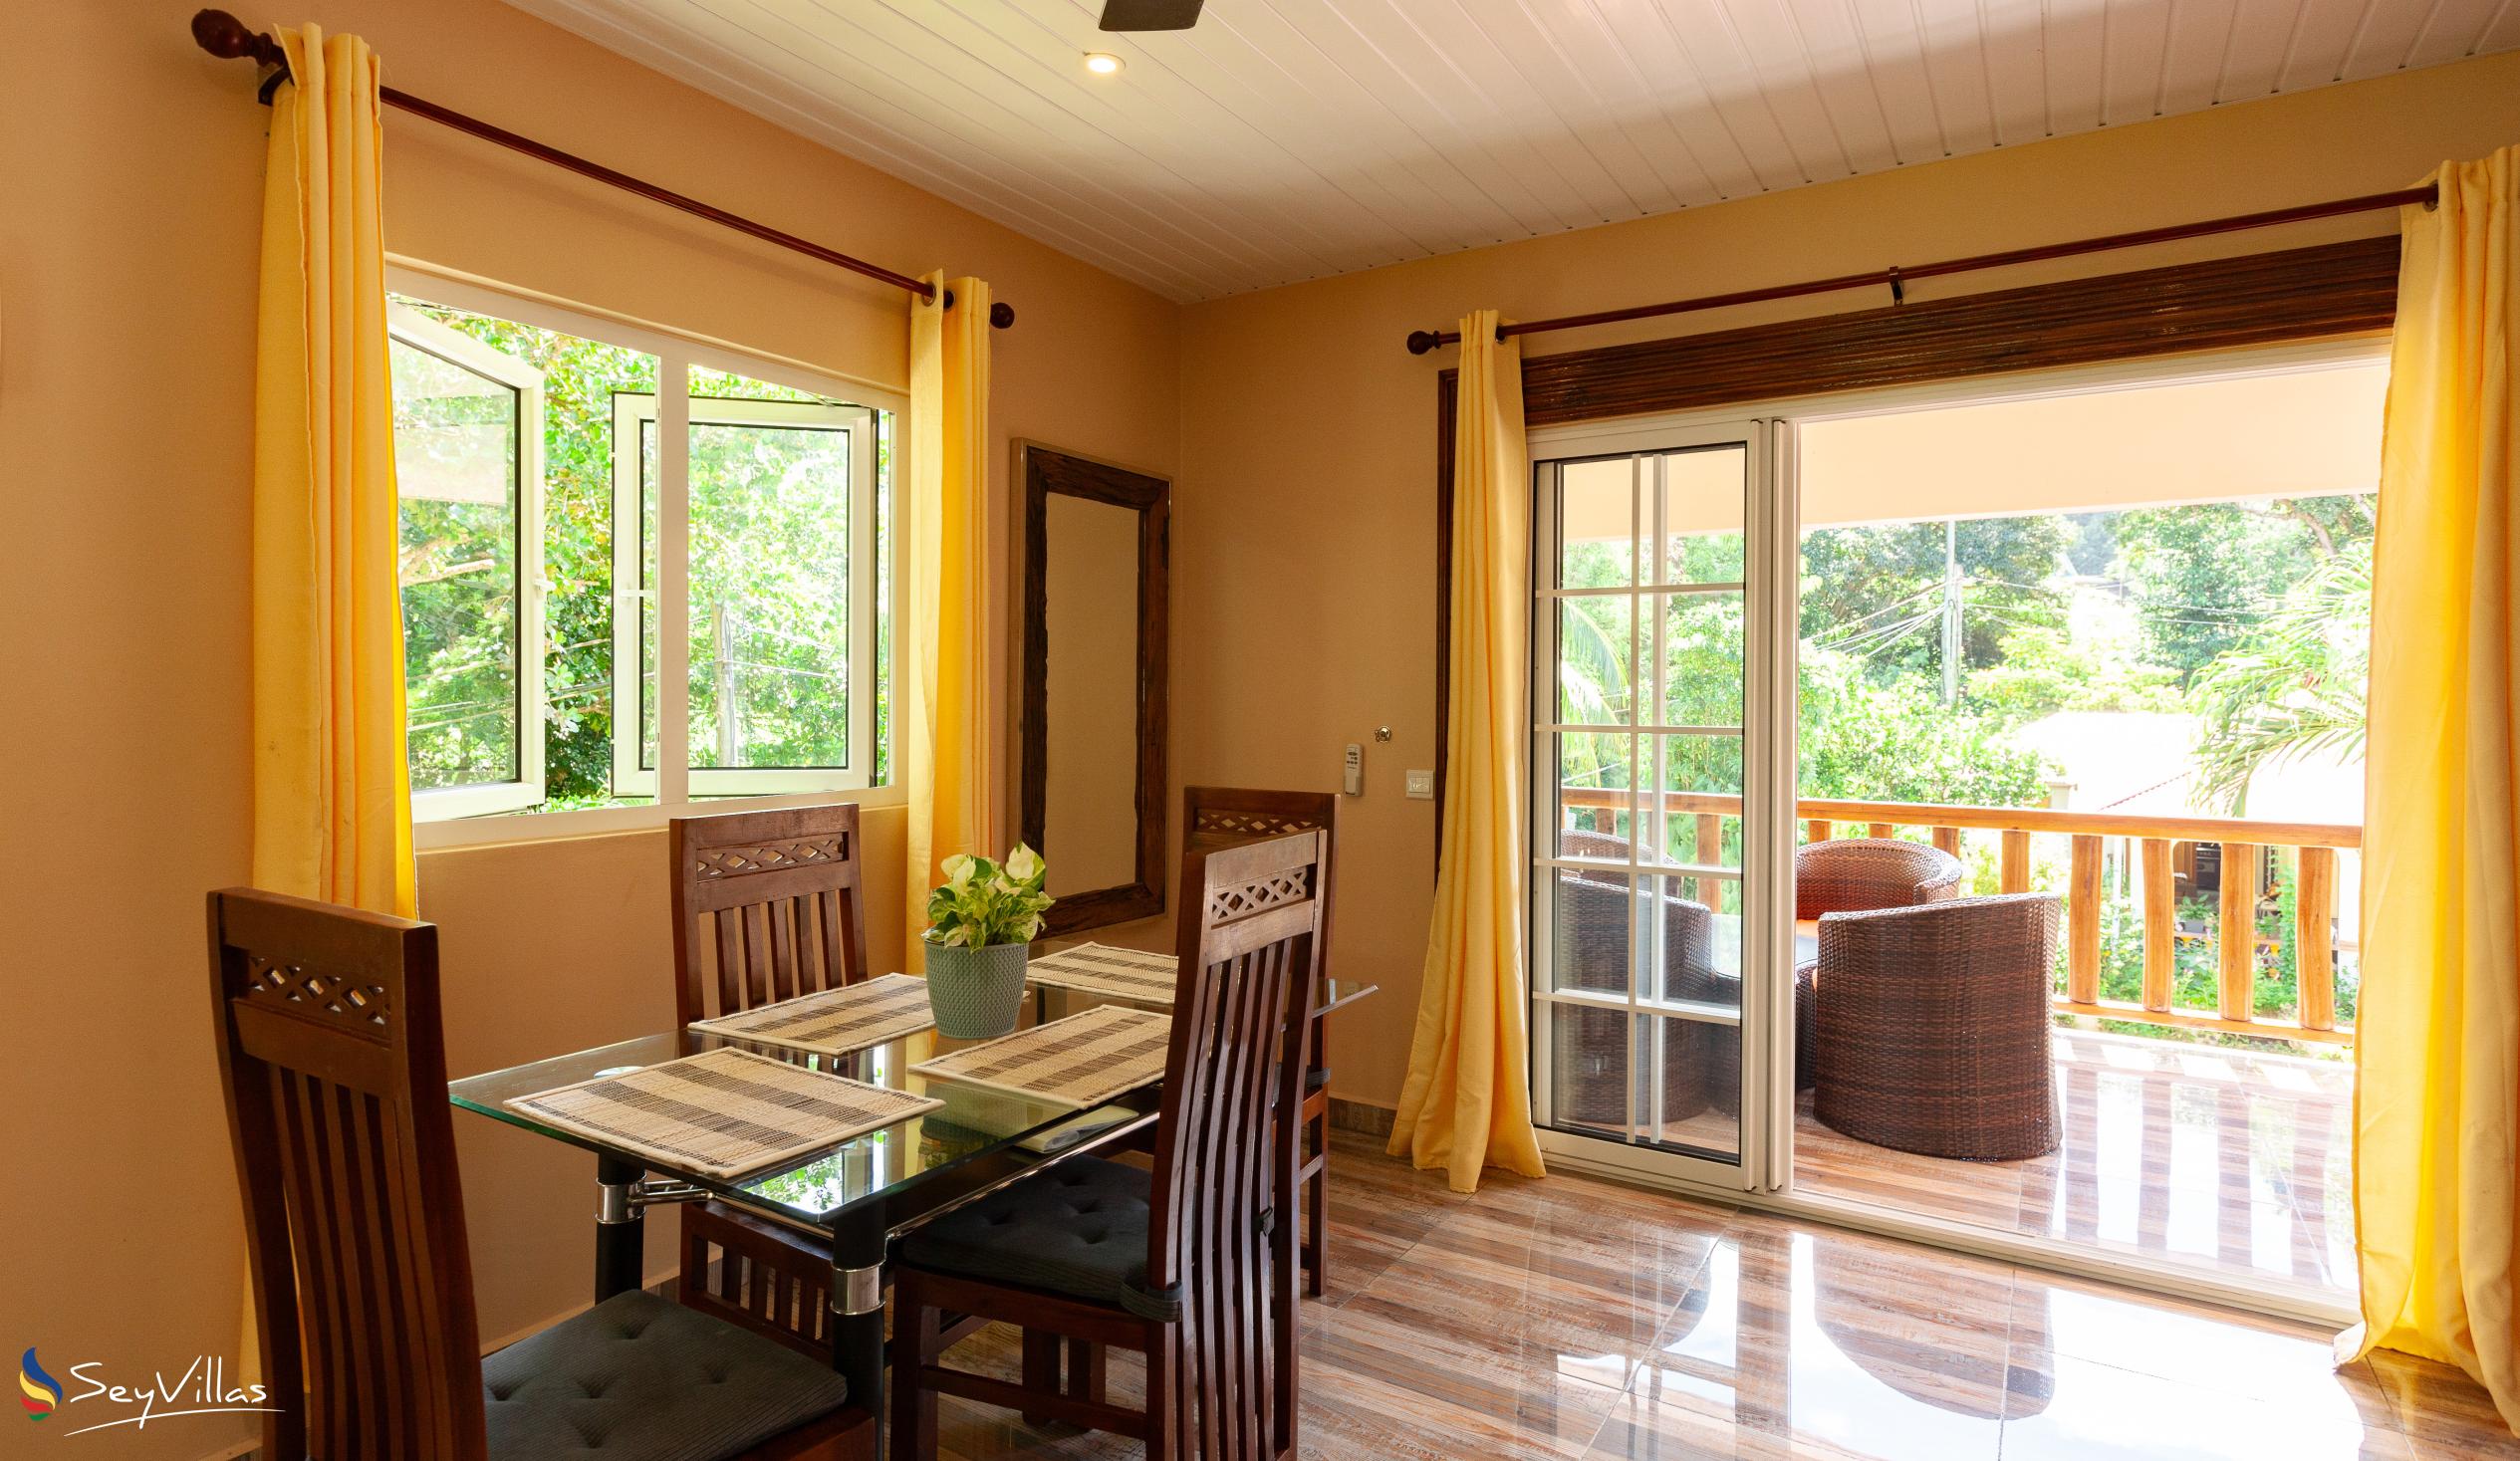 Photo 79: Chloe's Cottage - Deluxe Ensuite Family Apartment - La Digue (Seychelles)